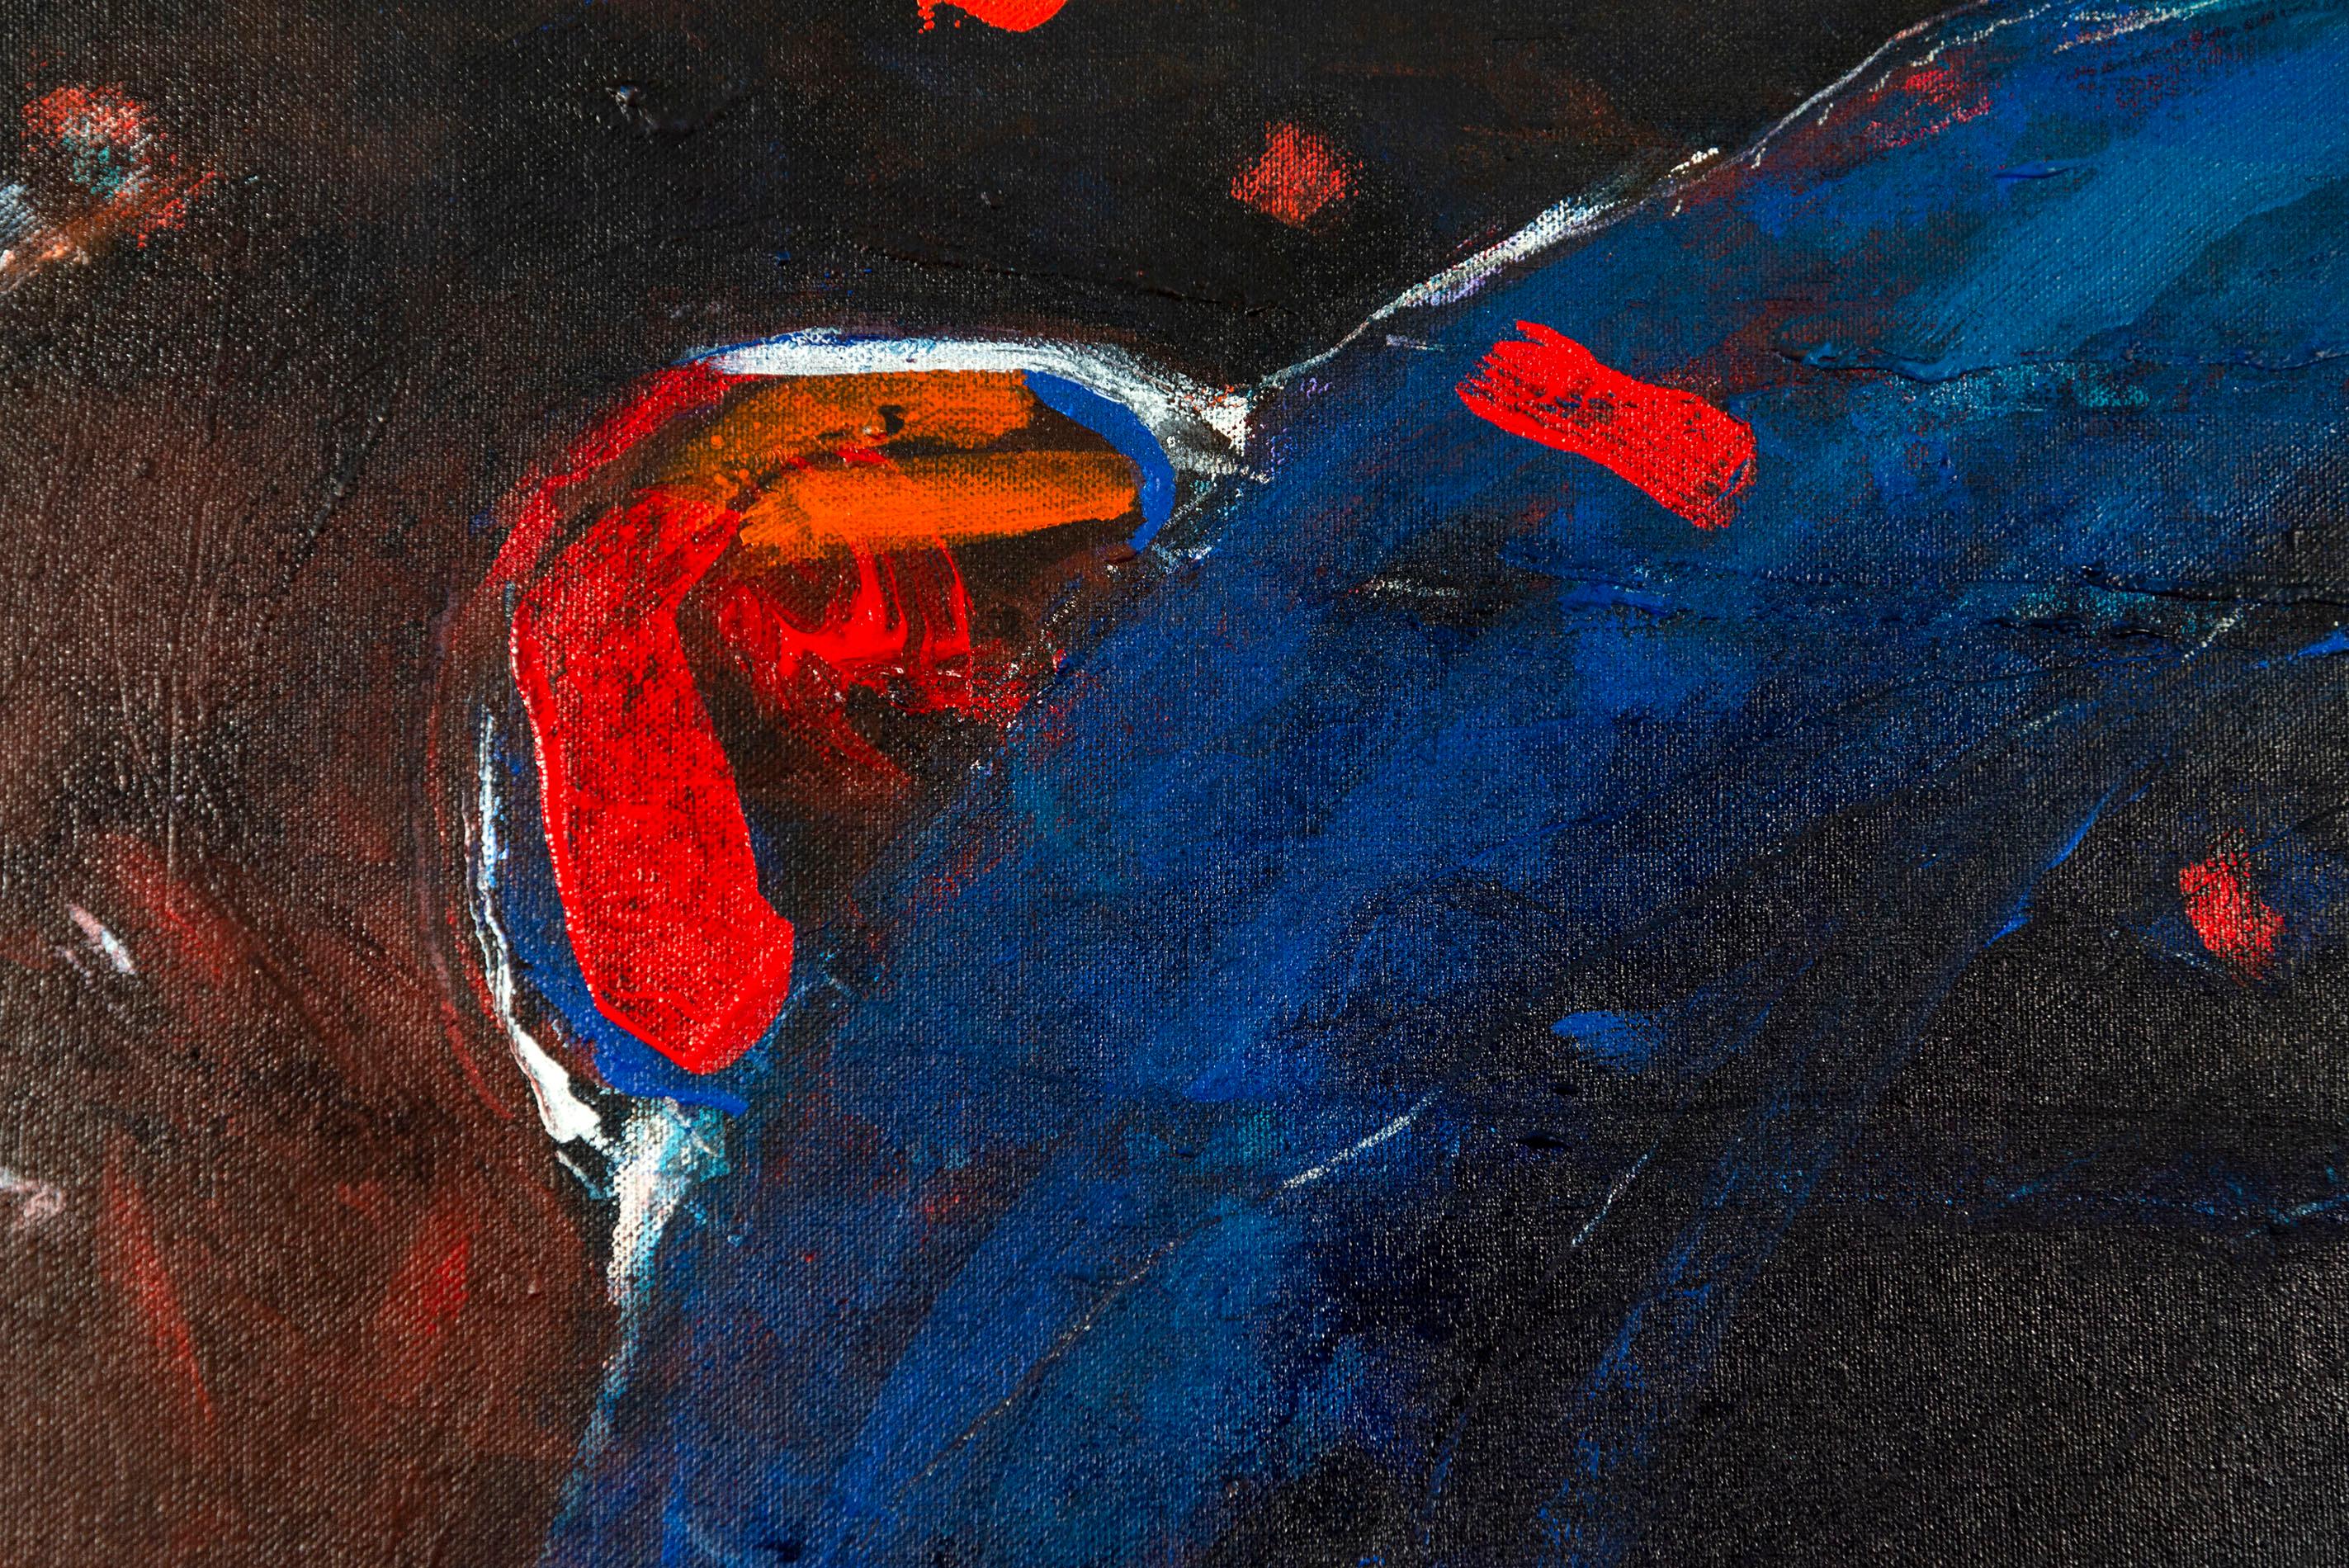 S'inspirant de sa riche histoire et de celle des peuples autochtones du monde entier, l'artiste métis Rick Rivet crée depuis des décennies des peintures contemporaines colorées et dynamiques.

Ce portrait d'une tête d'ours grizzly est réalisé dans